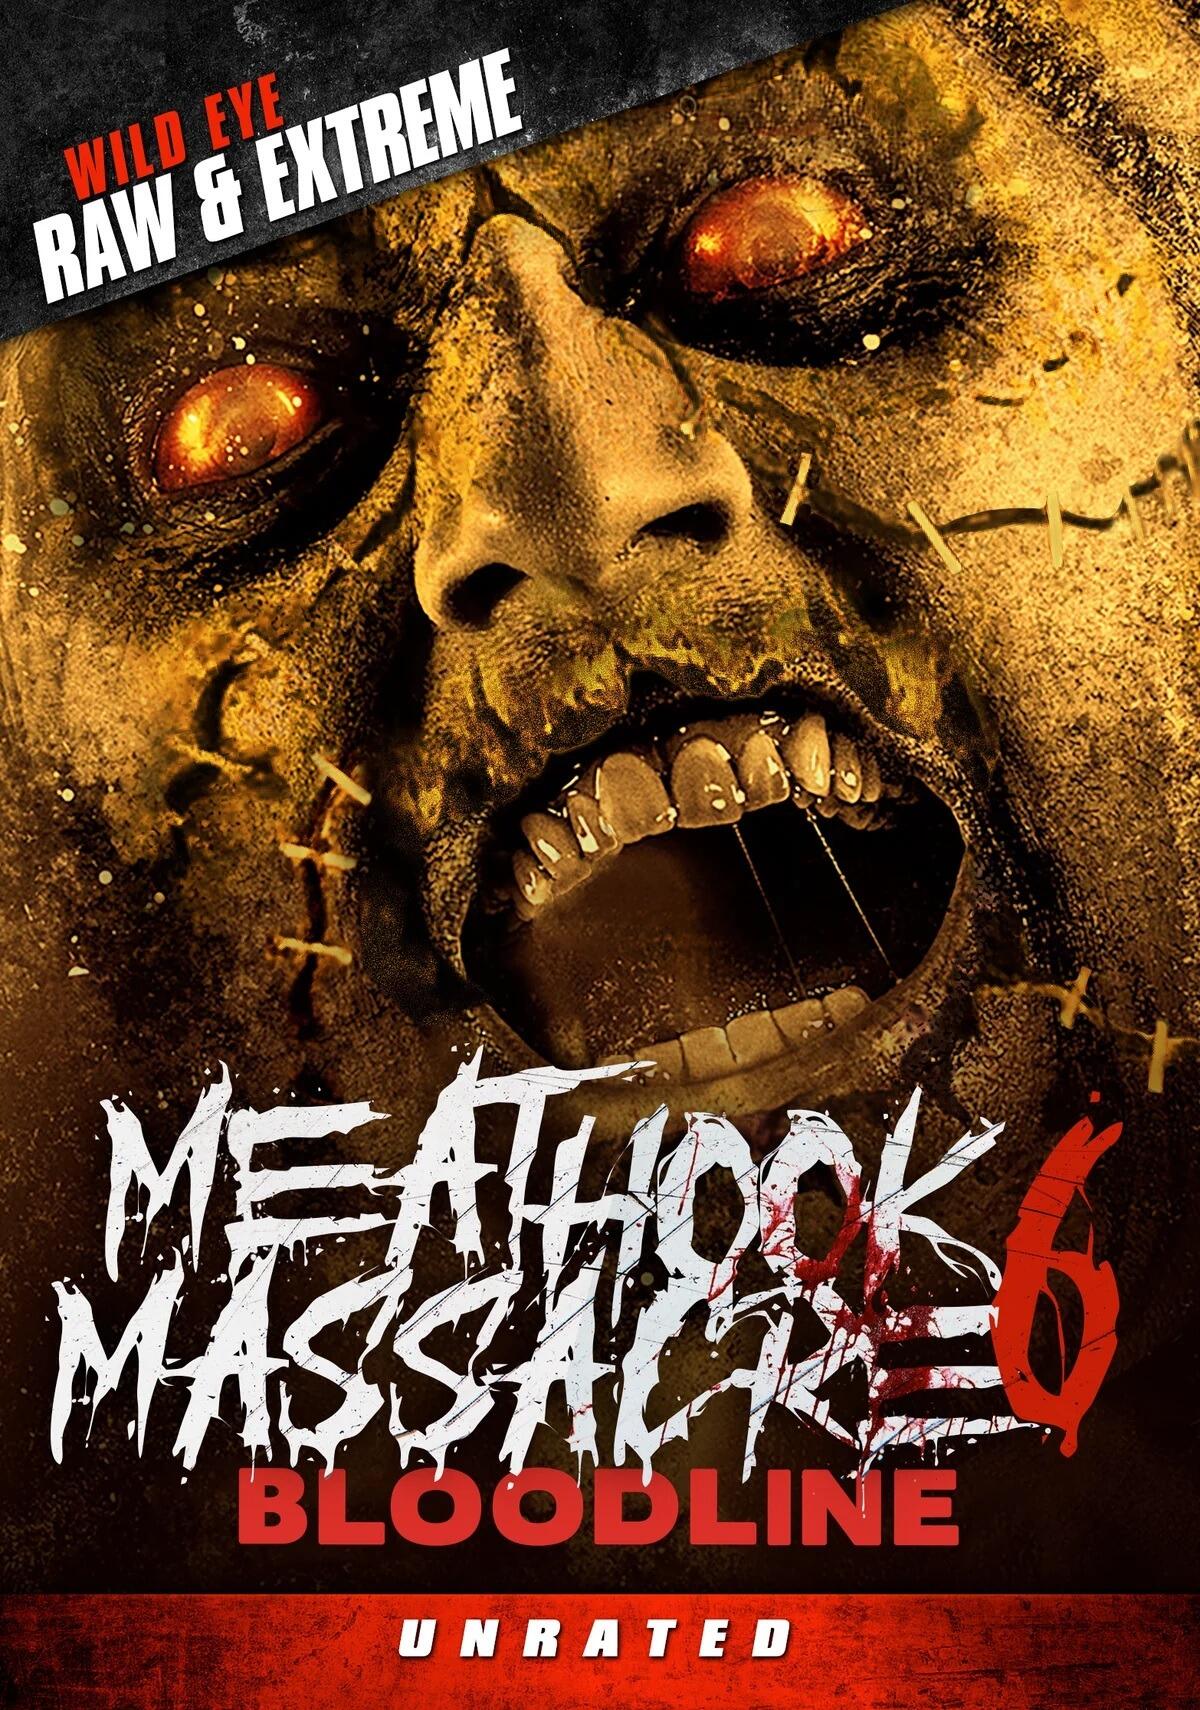 Meathook Massacre (DVD)